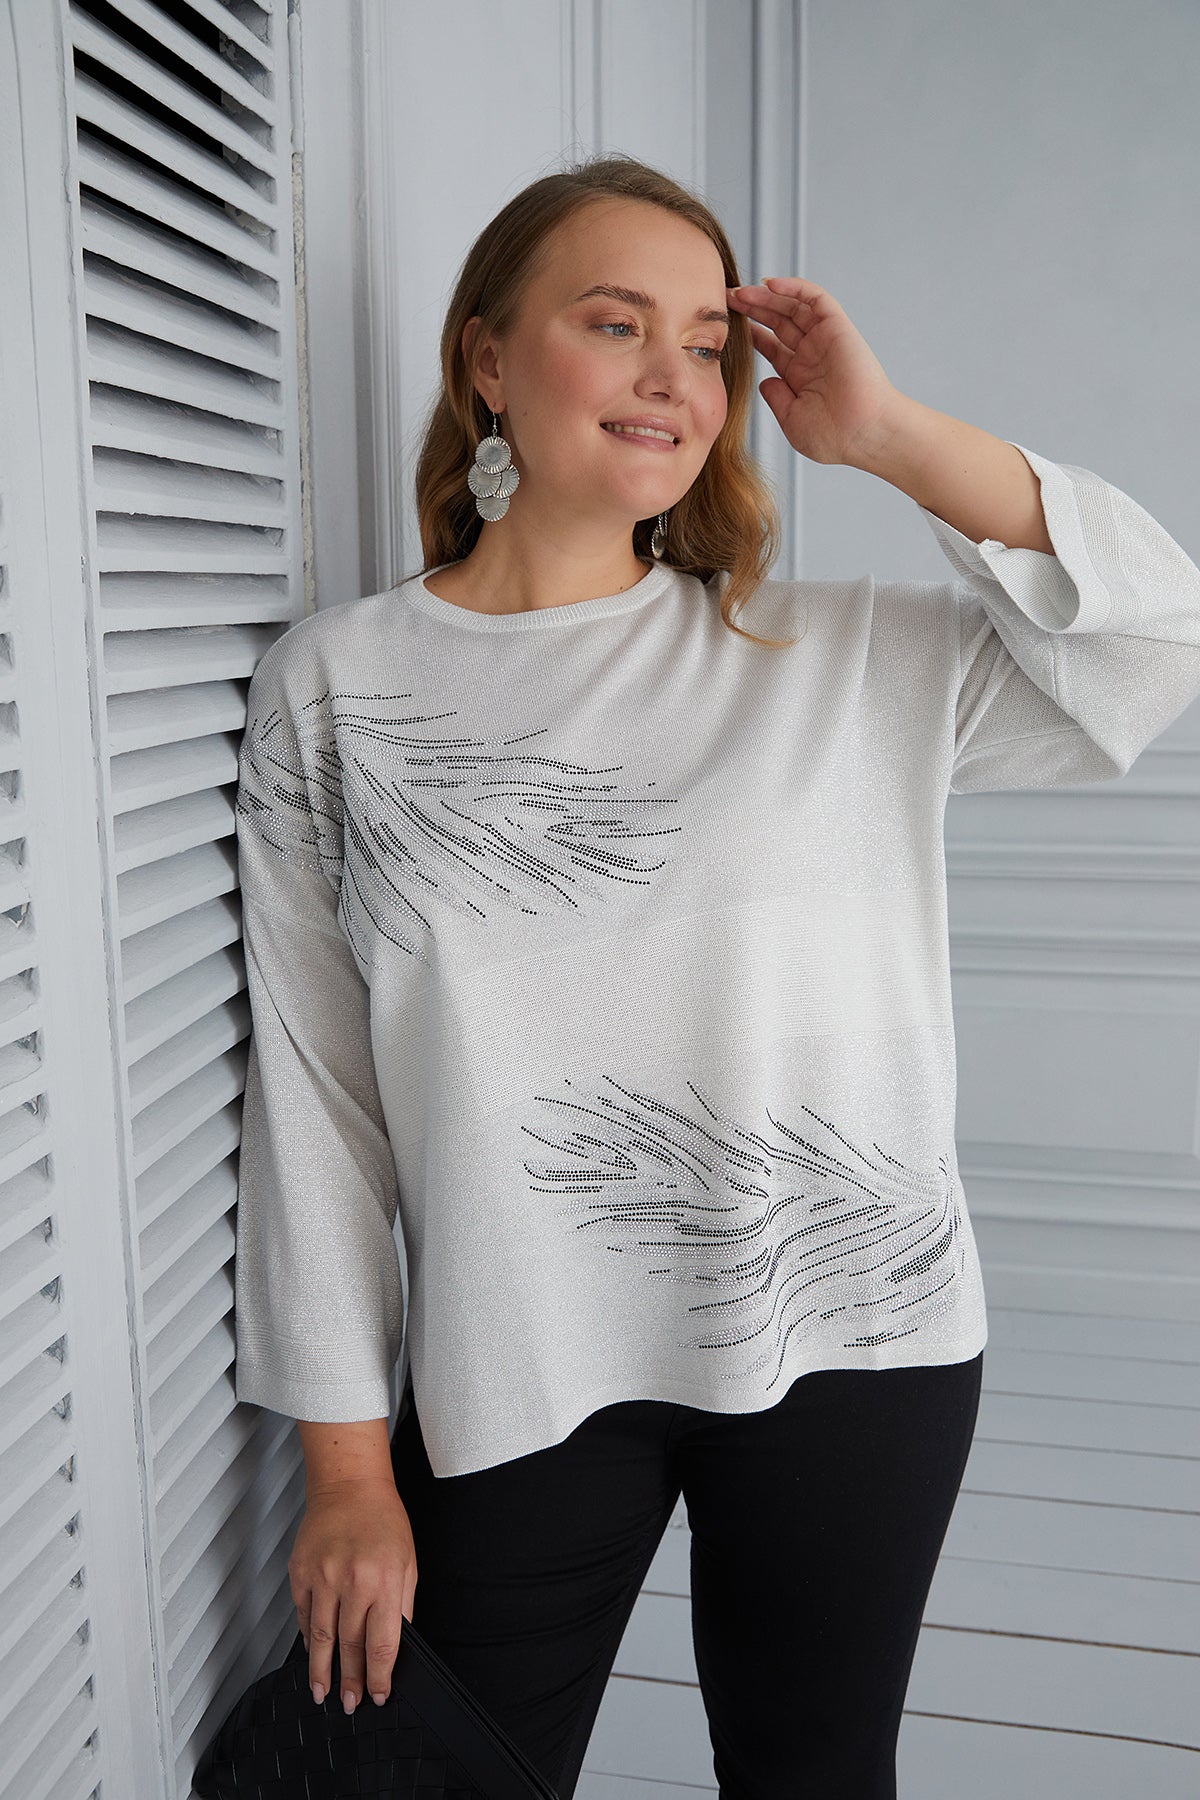 Πλεκτή μπλούζα με διακόσμηση πούπουλα σε μεγάλα μεγέθη  - Άσπρο